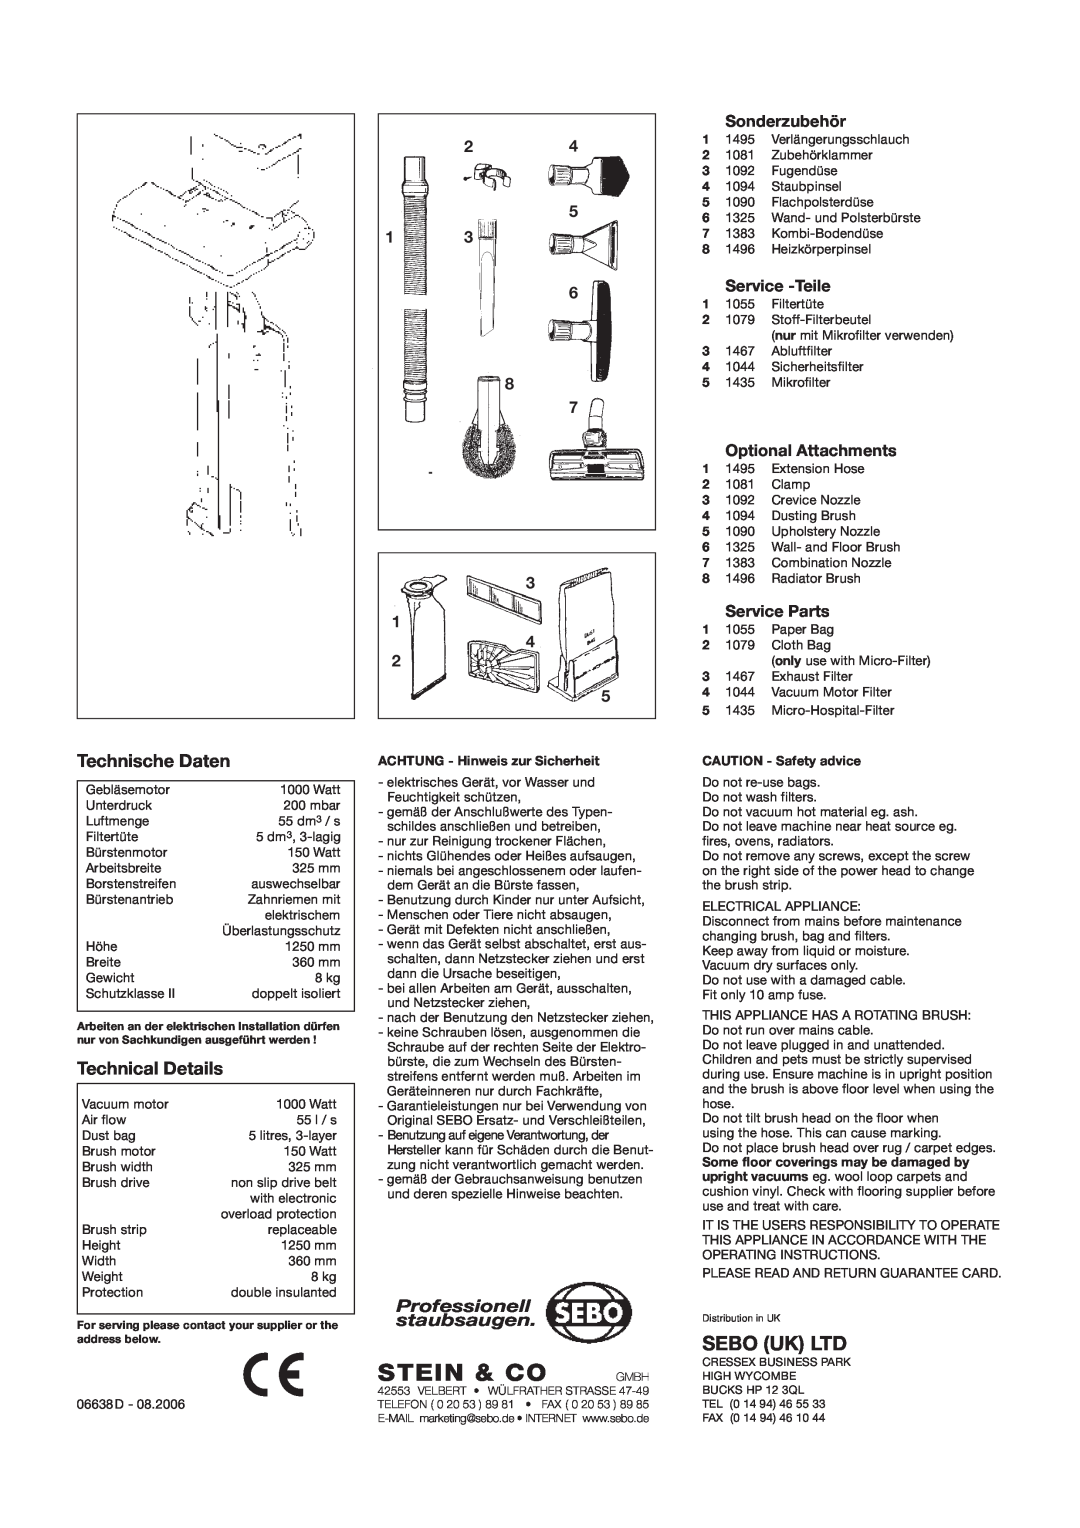 Sebo BS 36 manual Technische Daten, Technical Details, Stein & Co Gmbh, Professionell staubsaugen 